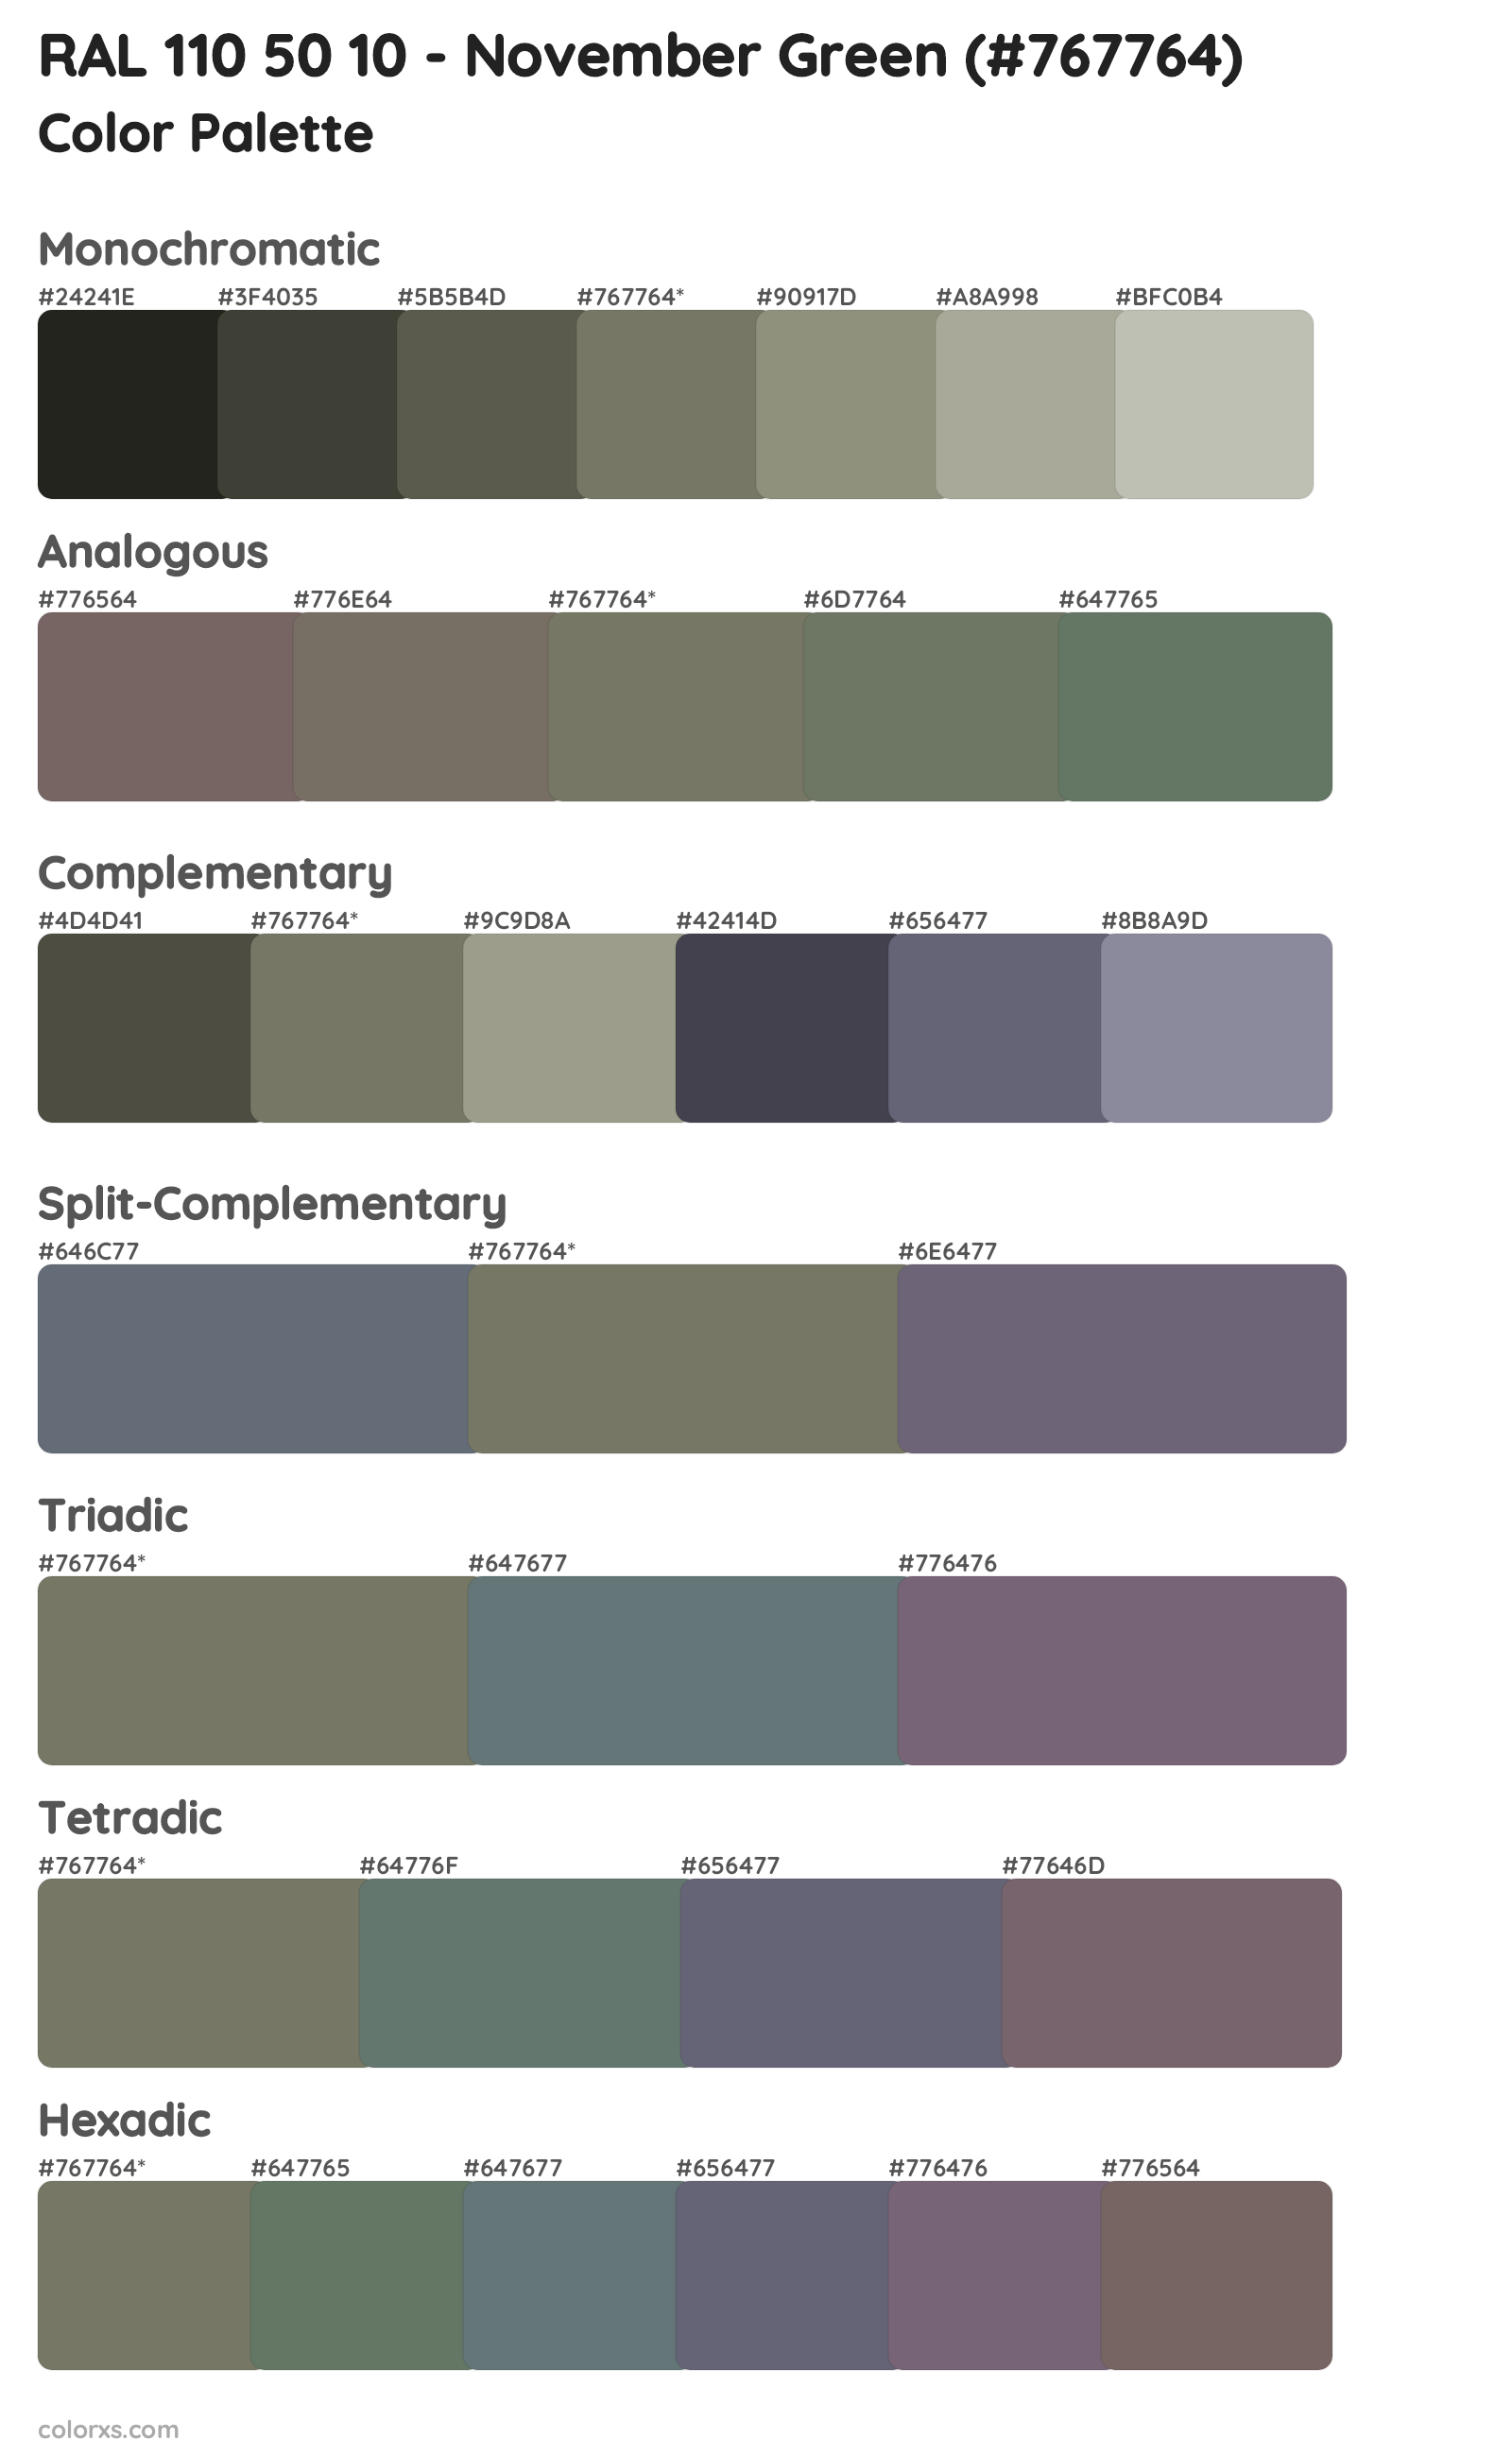 RAL 110 50 10 - November Green Color Scheme Palettes